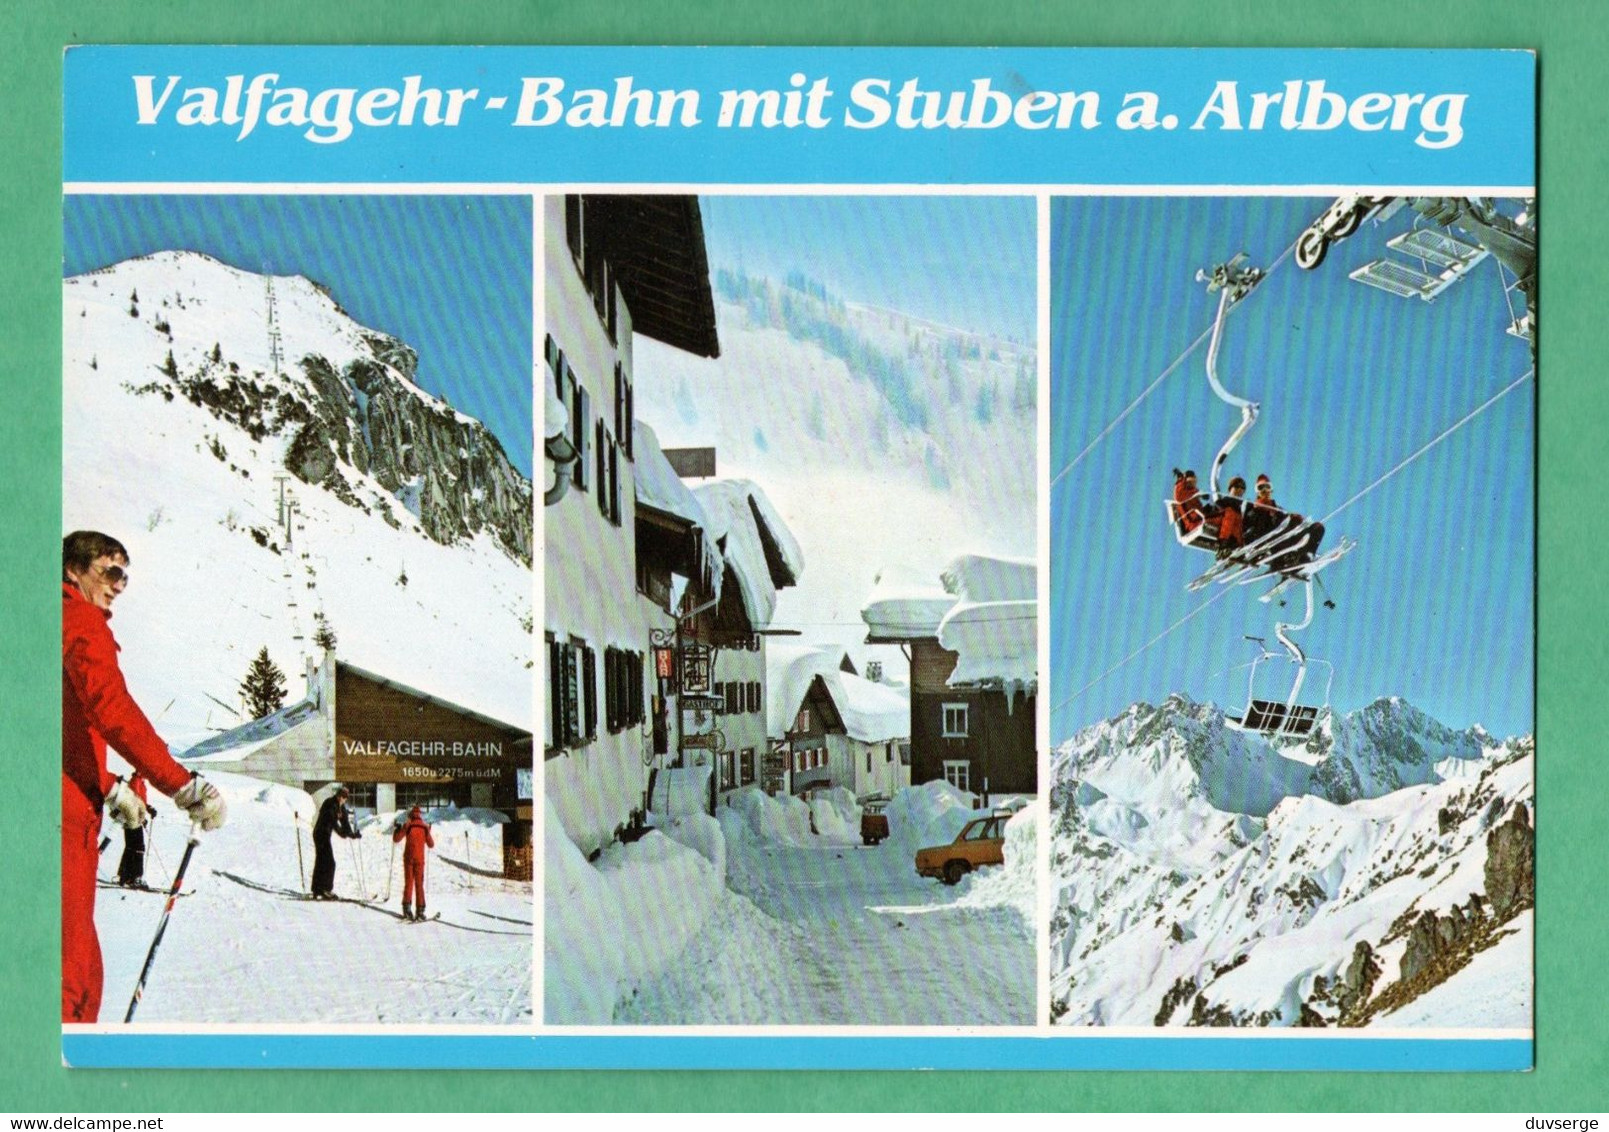 Autriche Austria Osterreich Stuben Am Arlberg Valfagehr Bahn - Stuben